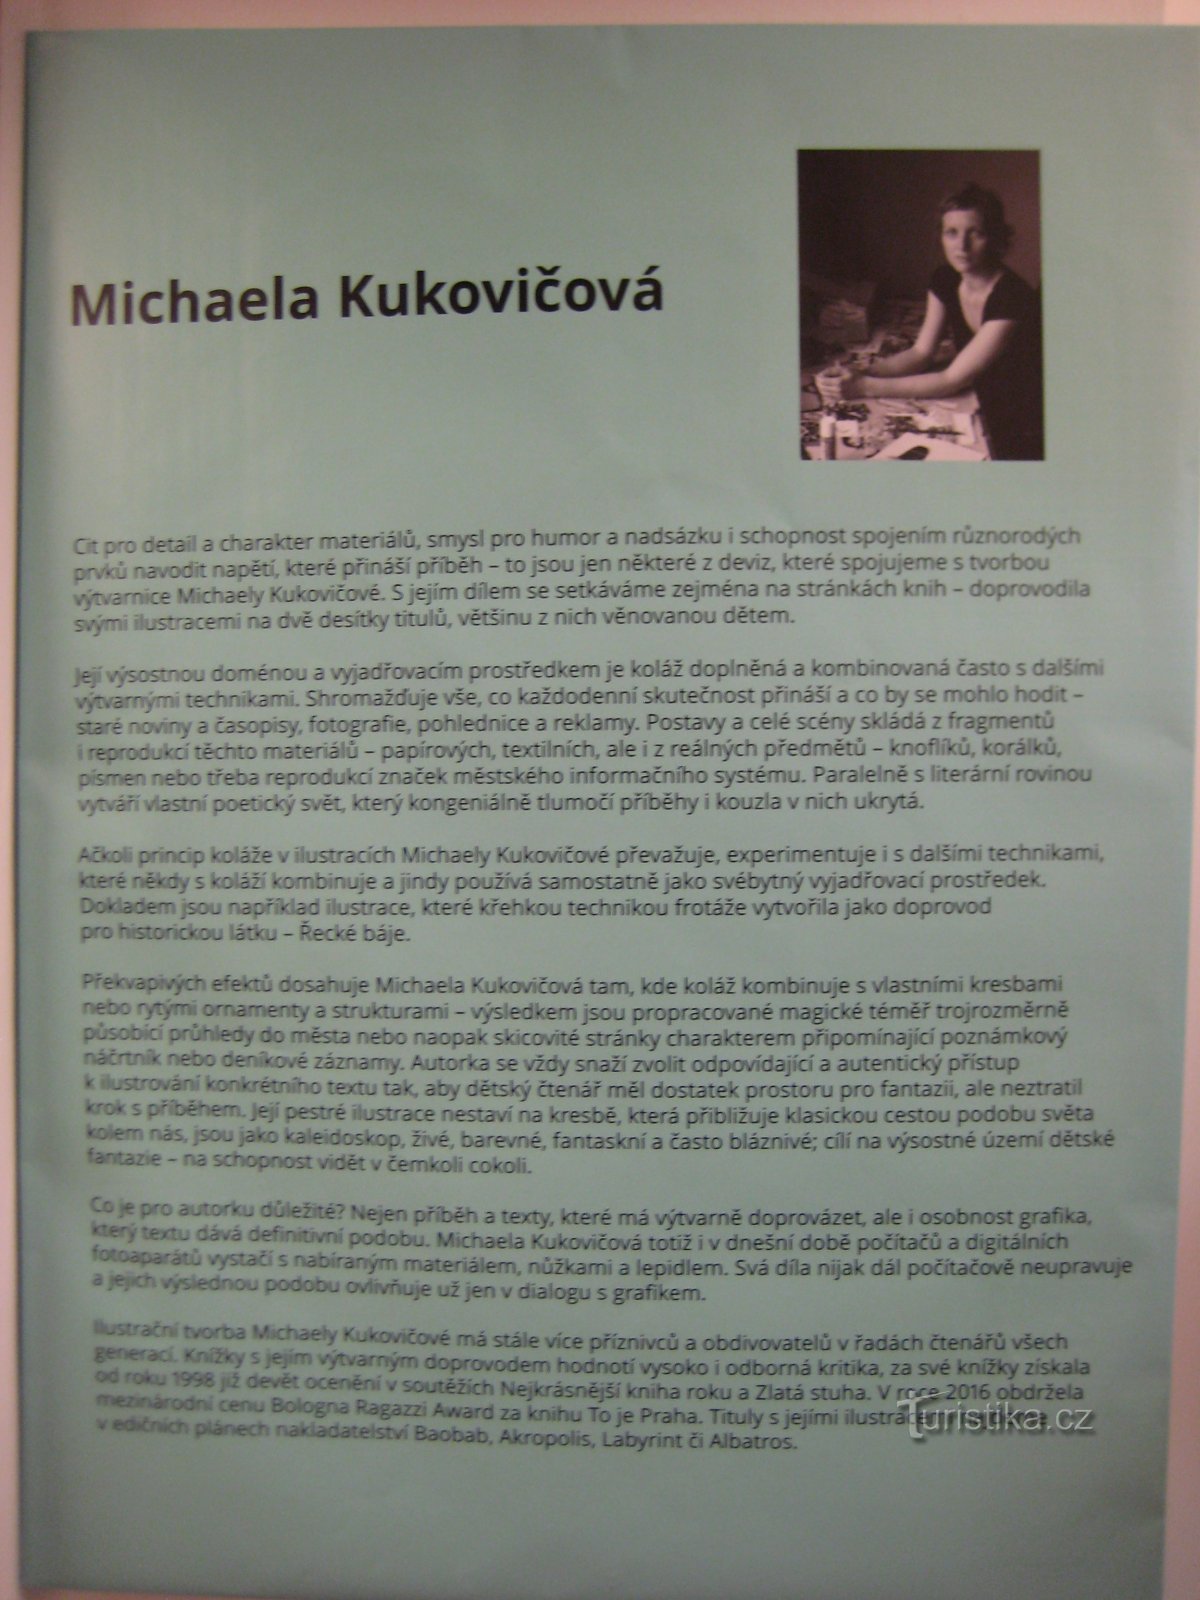 展覧会ミカエラ・クコヴィチョヴァ - ブーブルフ、ドゥクノウスなど - エルボー